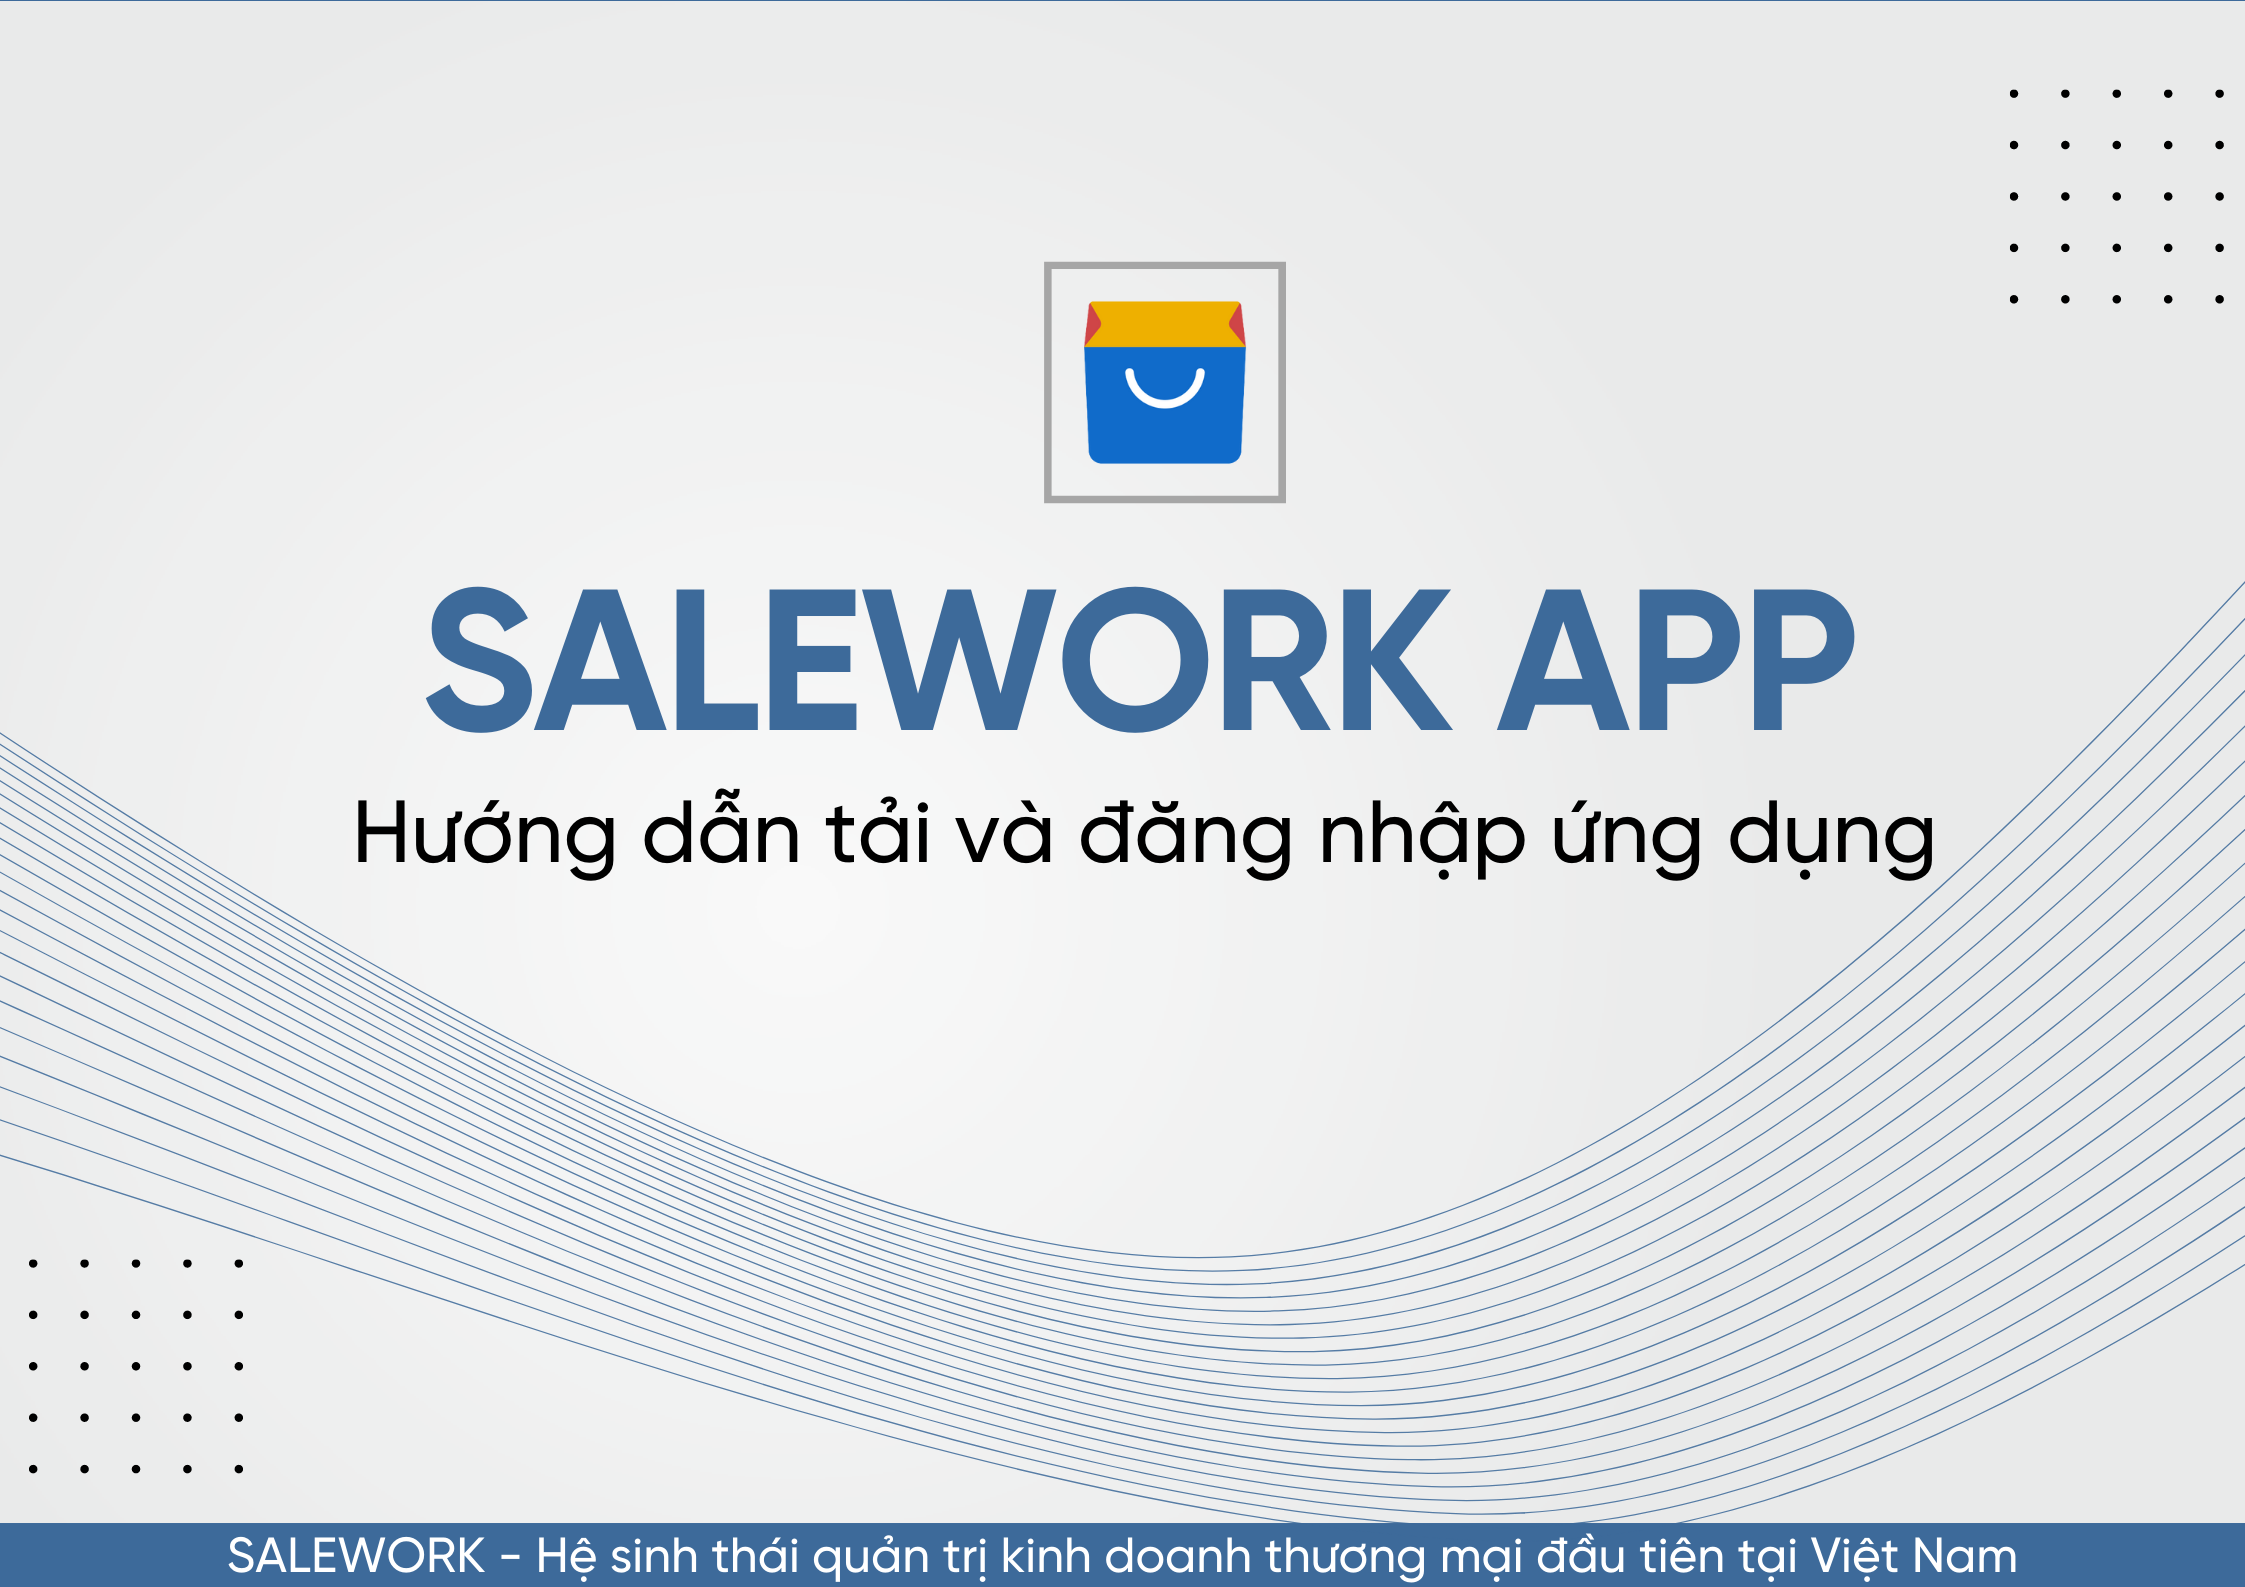 Hướng dẫn tải và đăng nhập ứng dụng Salework trên nền tảng di động - 62